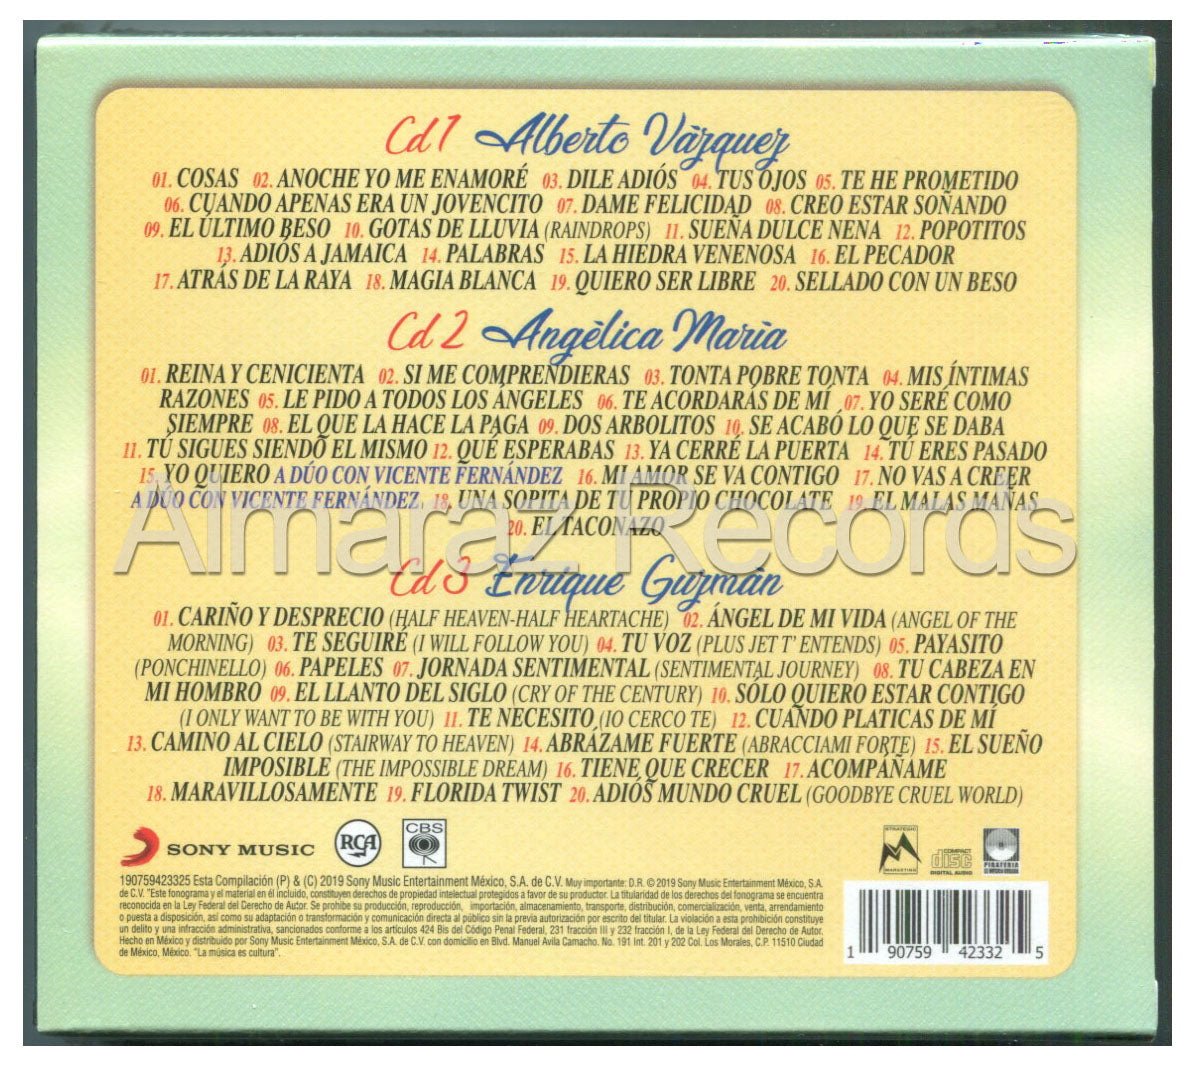 2 Siglos De Musica Angelica Maria / Alberto Vazquez / Enrique Guzman 3CD